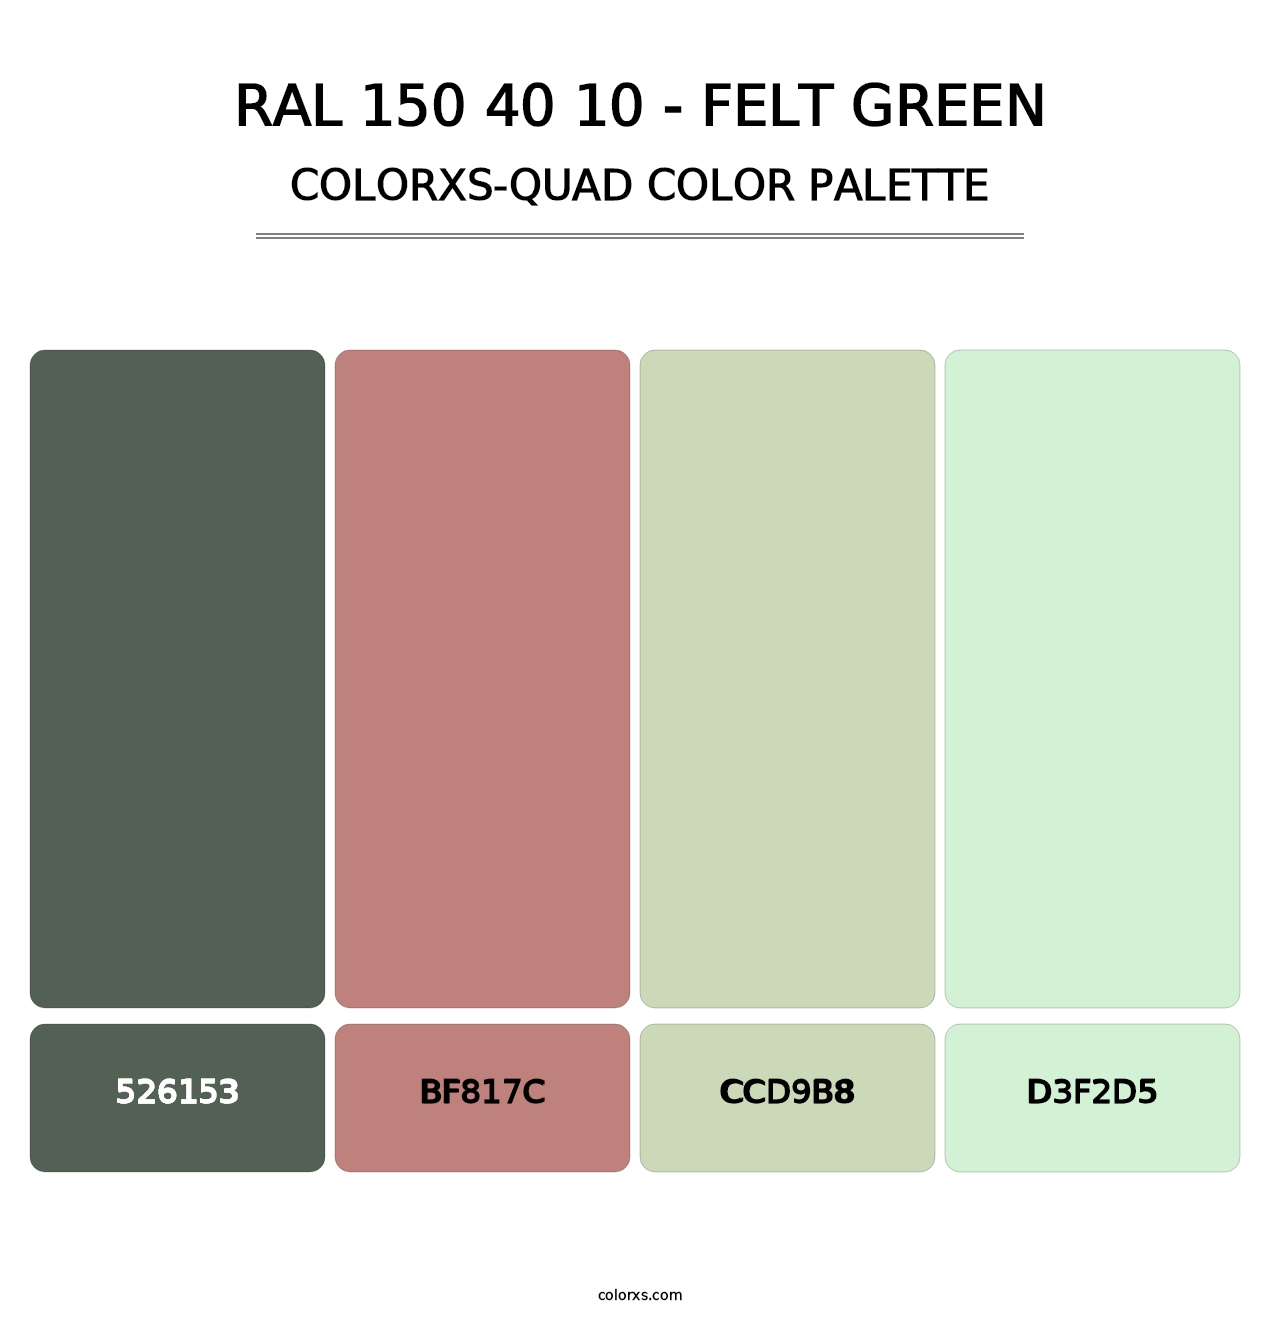 RAL 150 40 10 - Felt Green - Colorxs Quad Palette